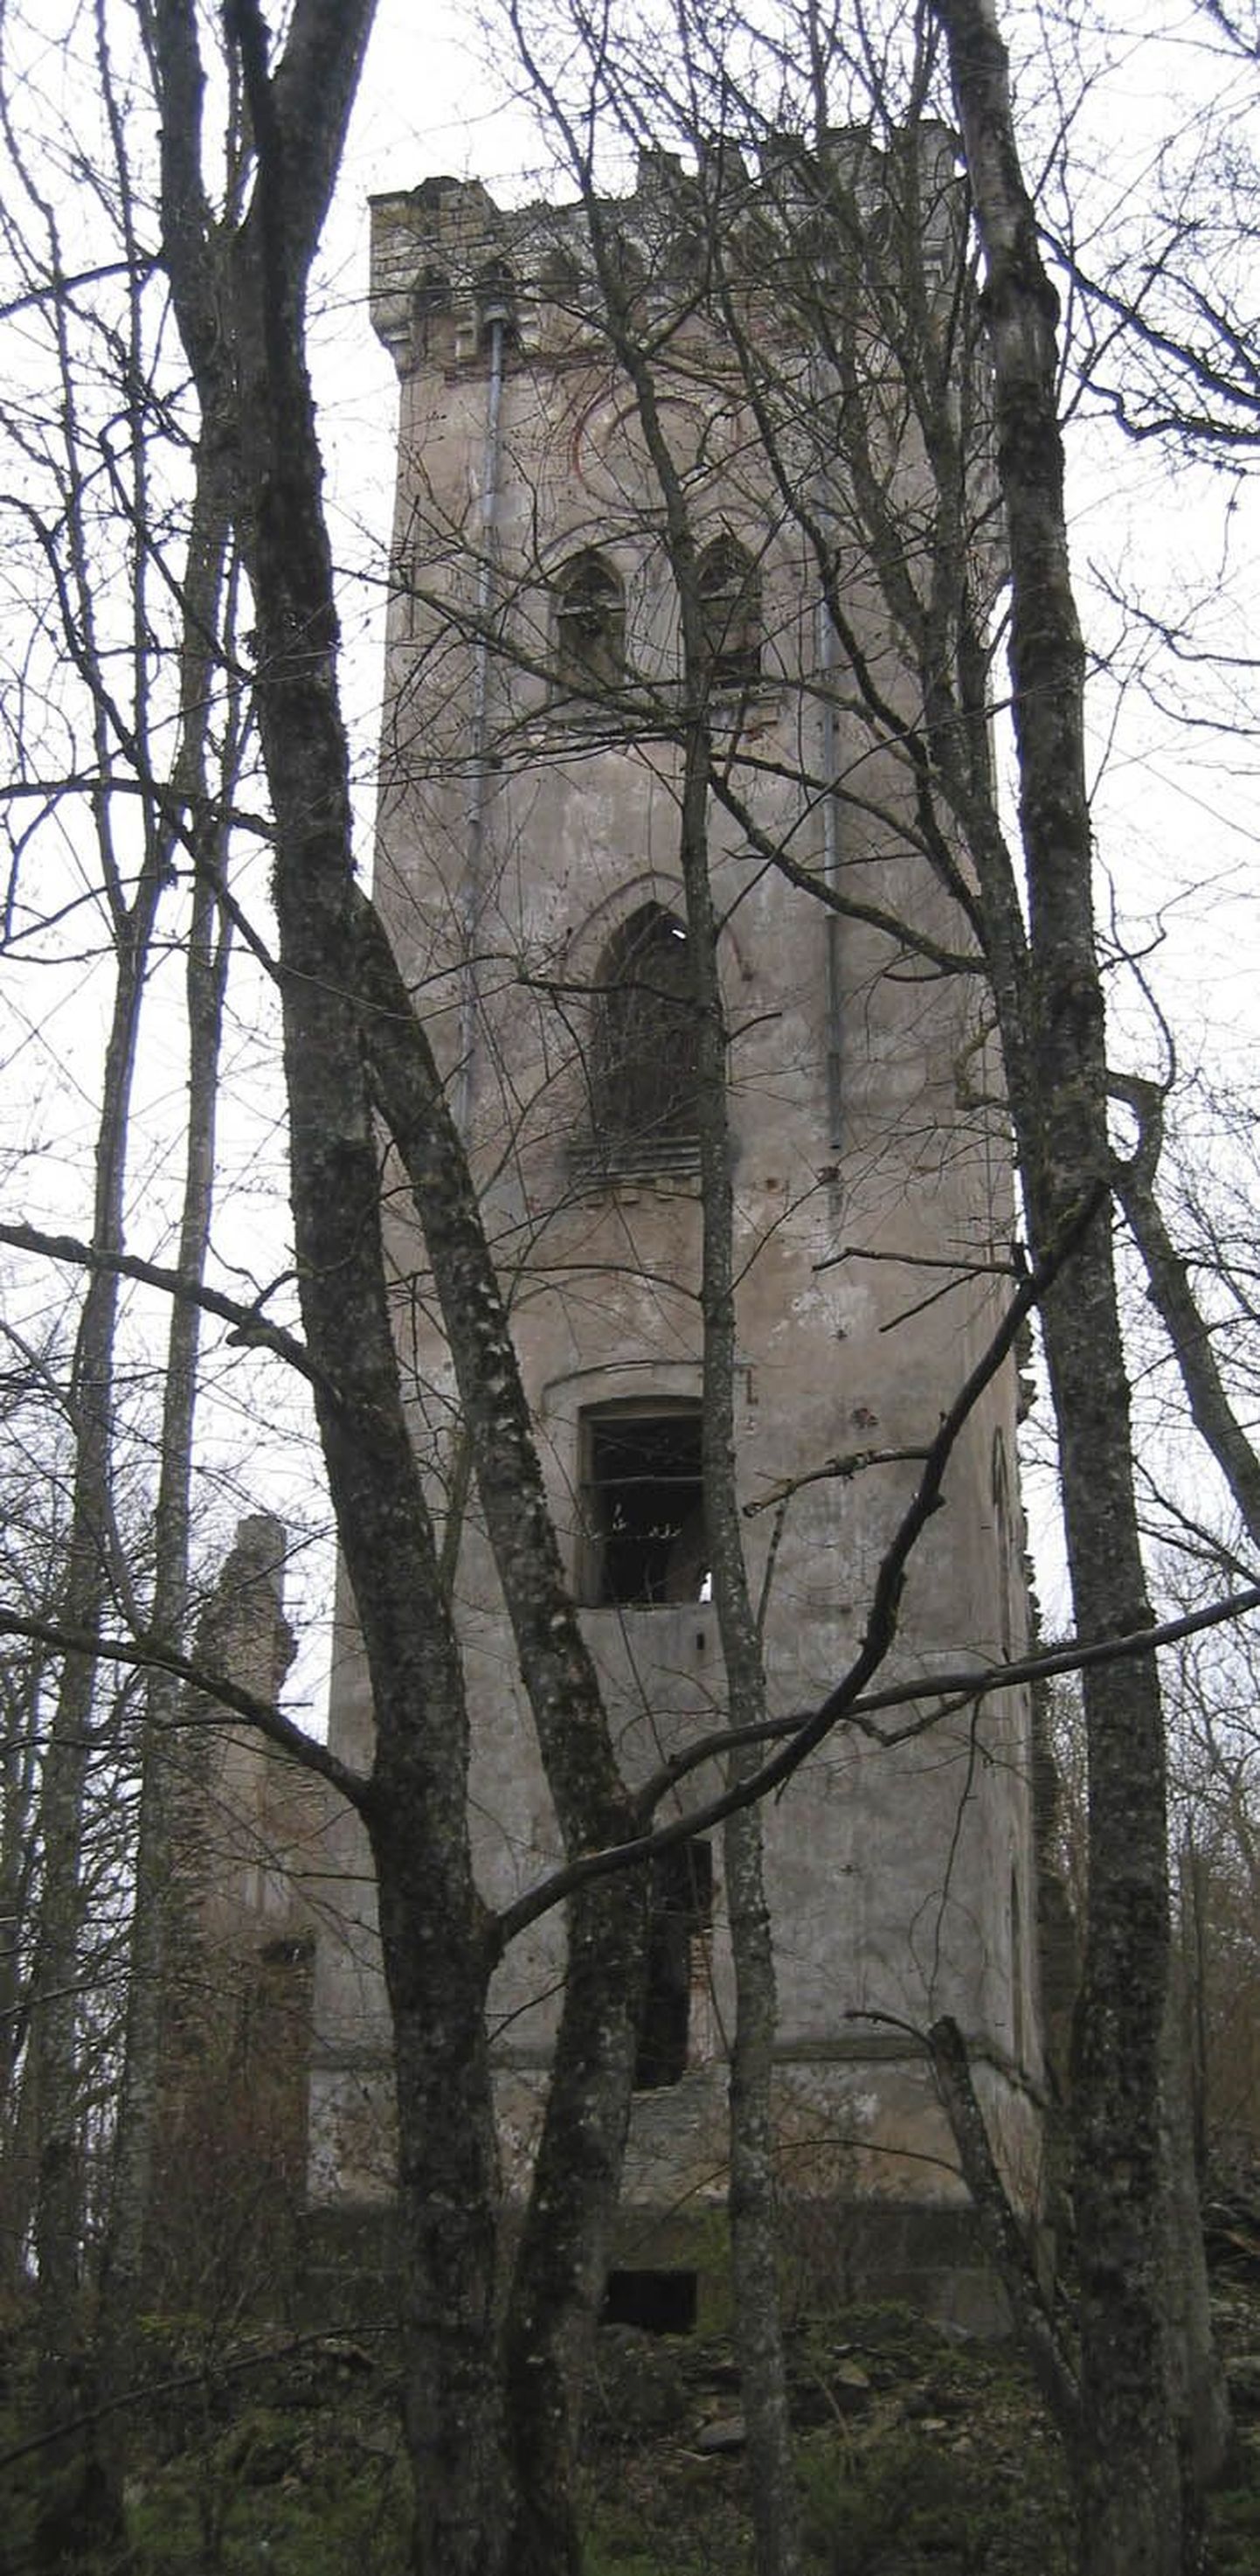 Tõõrakõrve külas asuvast Lehtse mõisa tornist võib tulevikus saada üks Tapa valla sümbolitest, kui torni konserveerimiseks vajalik raha leida suudetakse.